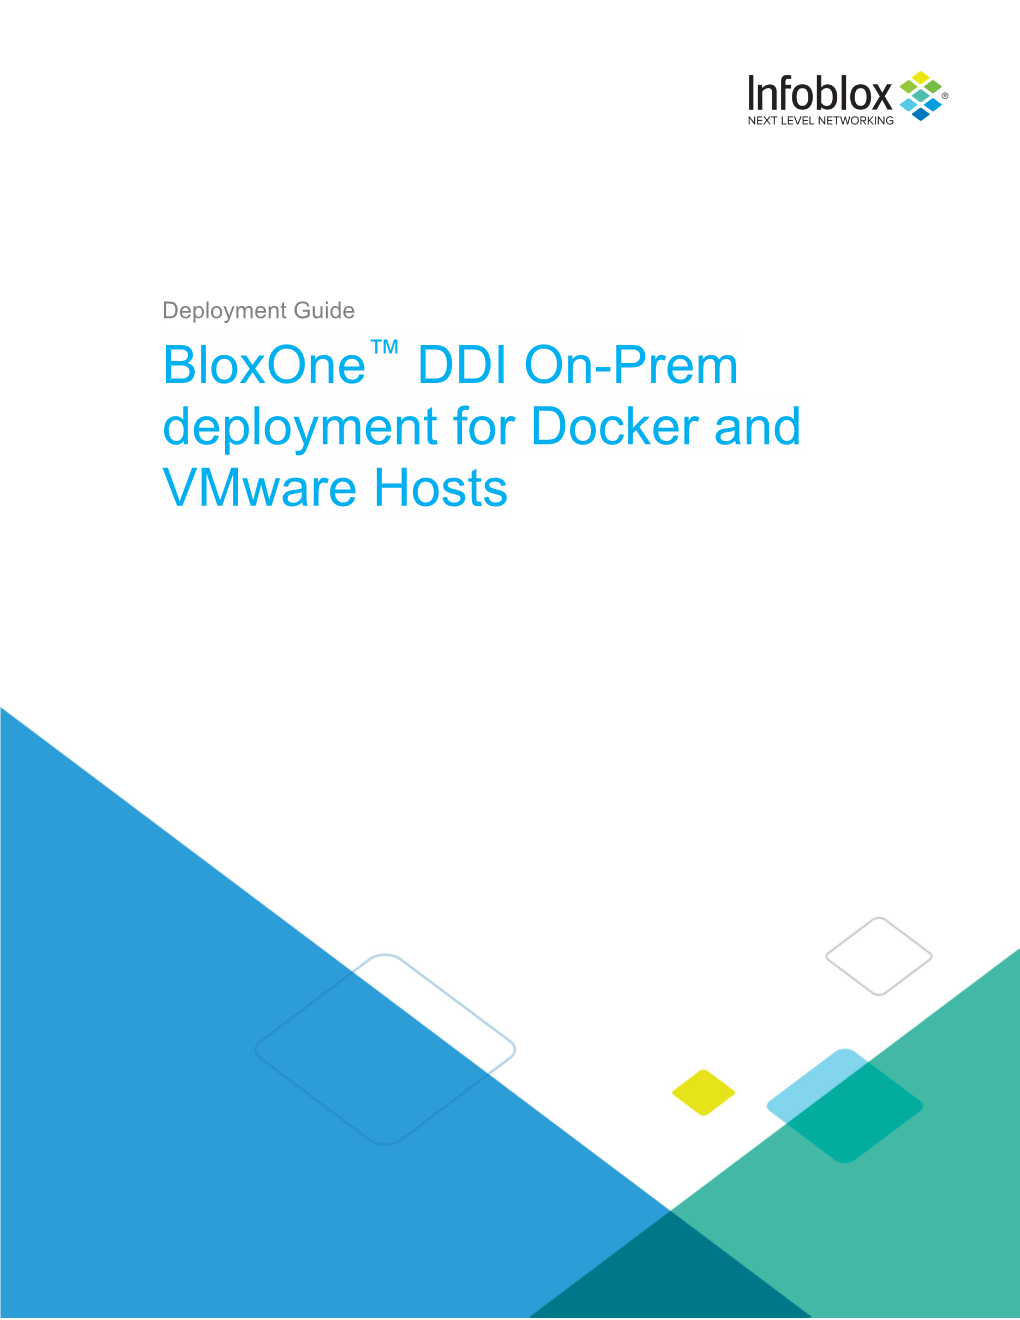 Bloxone™ DDI On-Prem Deployment for Docker and Vmware Hosts - October 2019 1 of 18